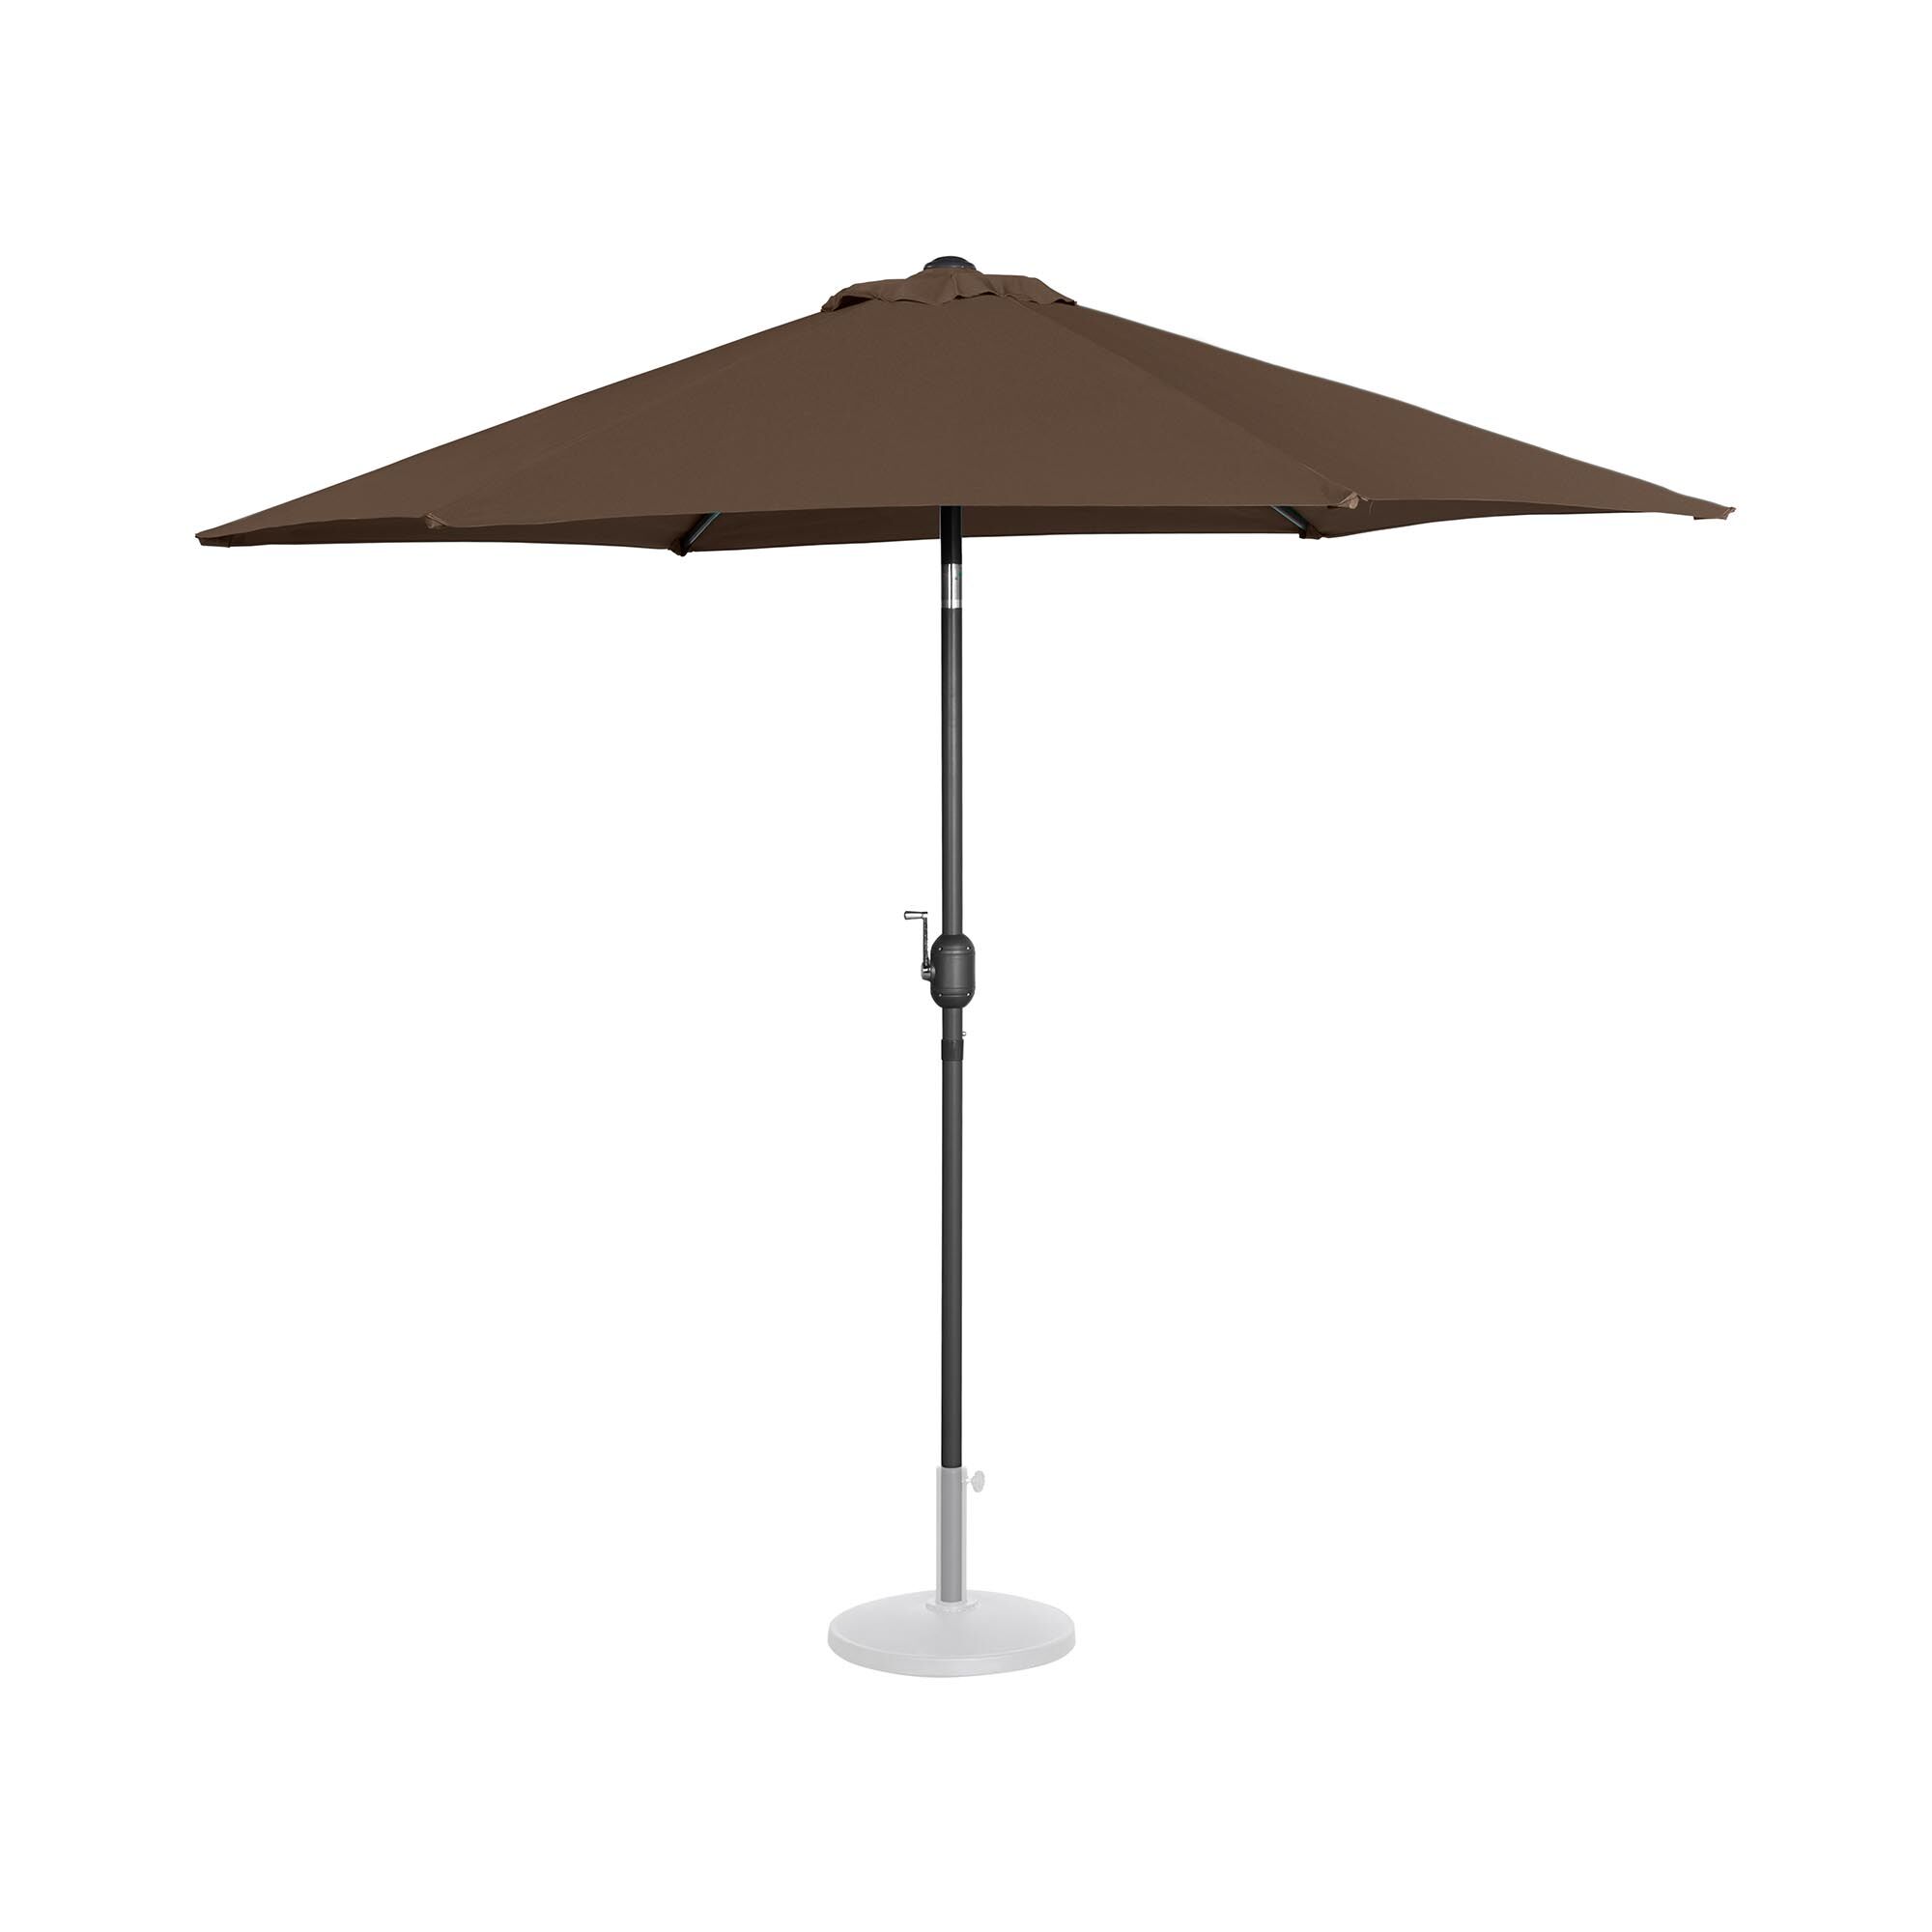 Uniprodo Large Outdoor Umbrella - brown - hexagonal - Ø 270 cm - tiltable UNI_UMBRELLA_R270BR